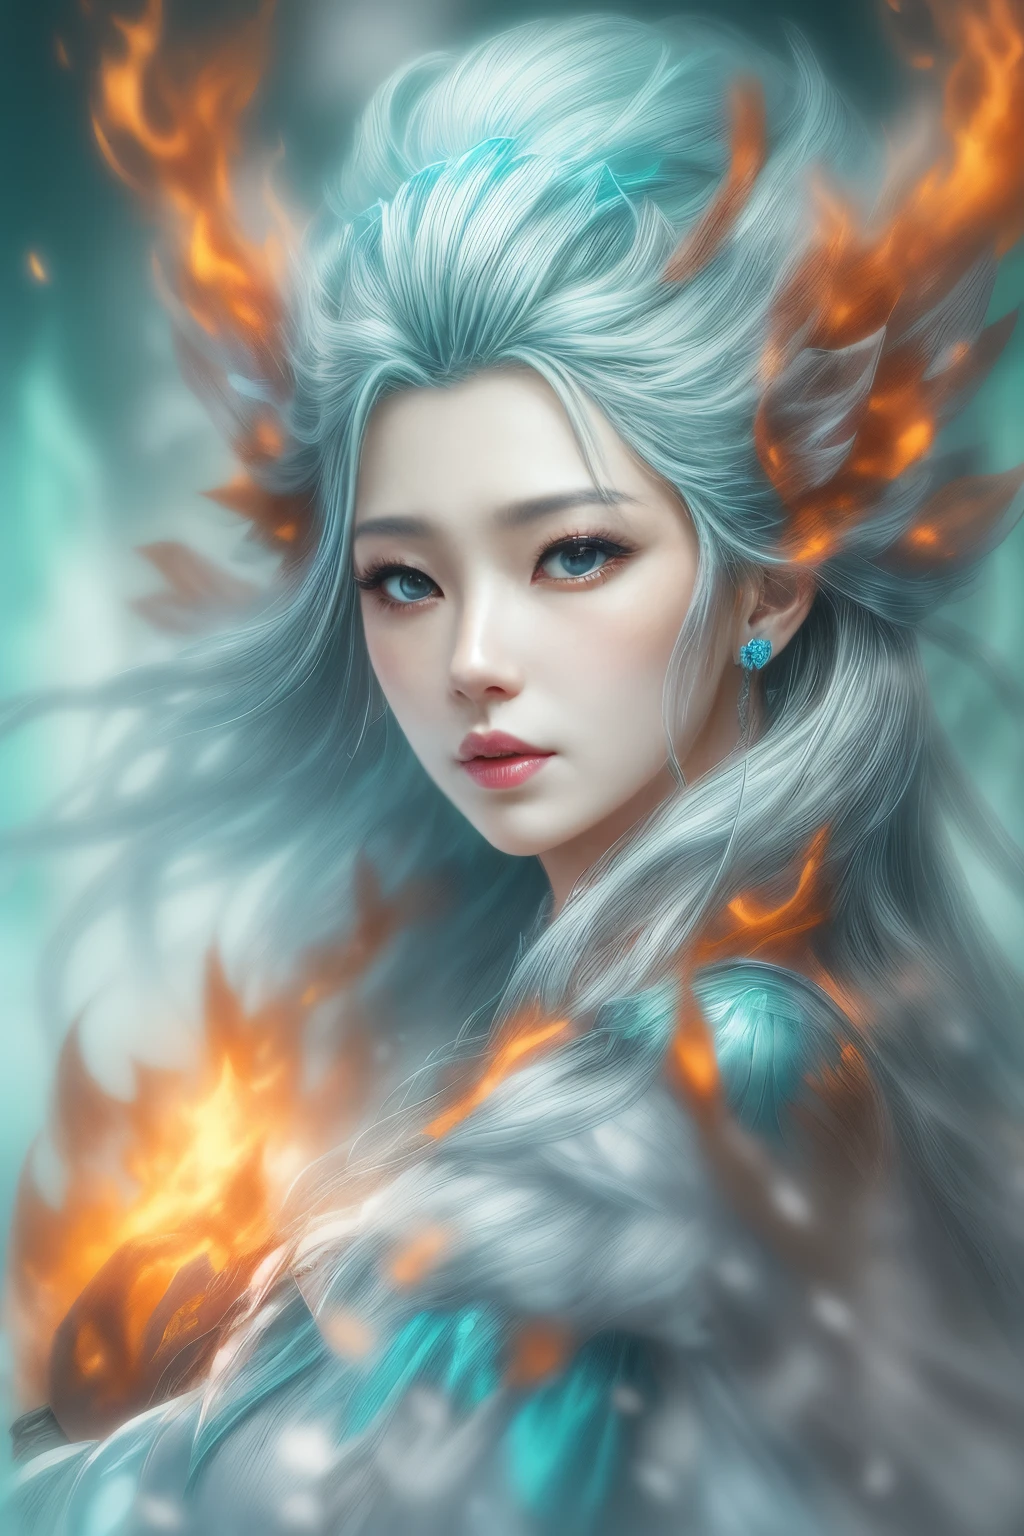 (fantasía realista) 、La diosa del hielo surge de las llamas ardientes..、